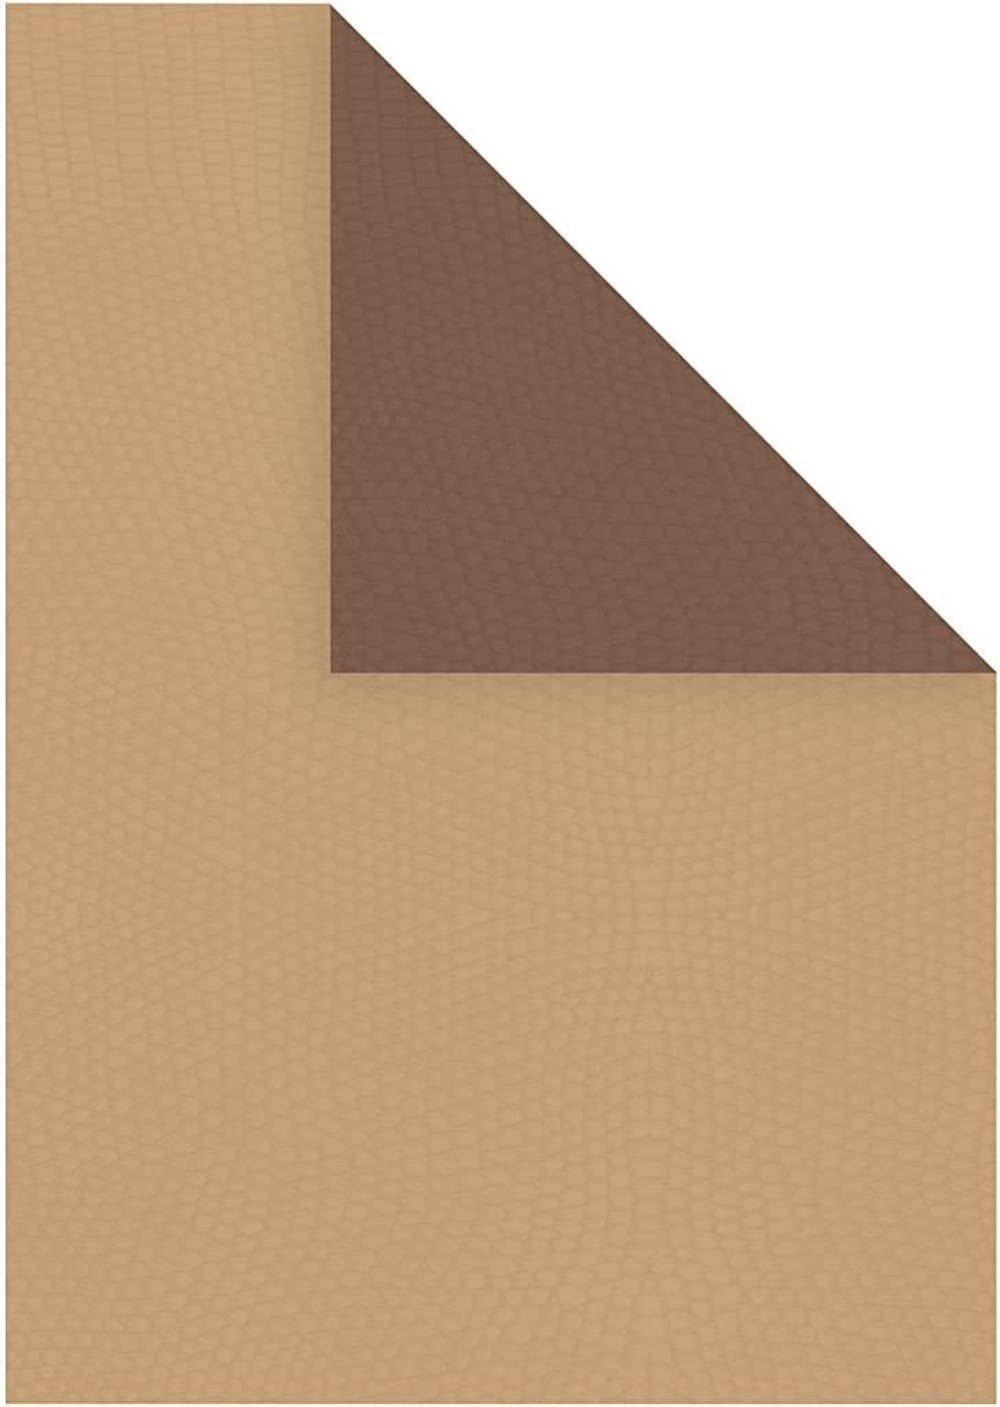 Creotime Zeichenpapier Duo Papier Strukturpapier, A4 21x30 cm, 100g, 20Bl Braun